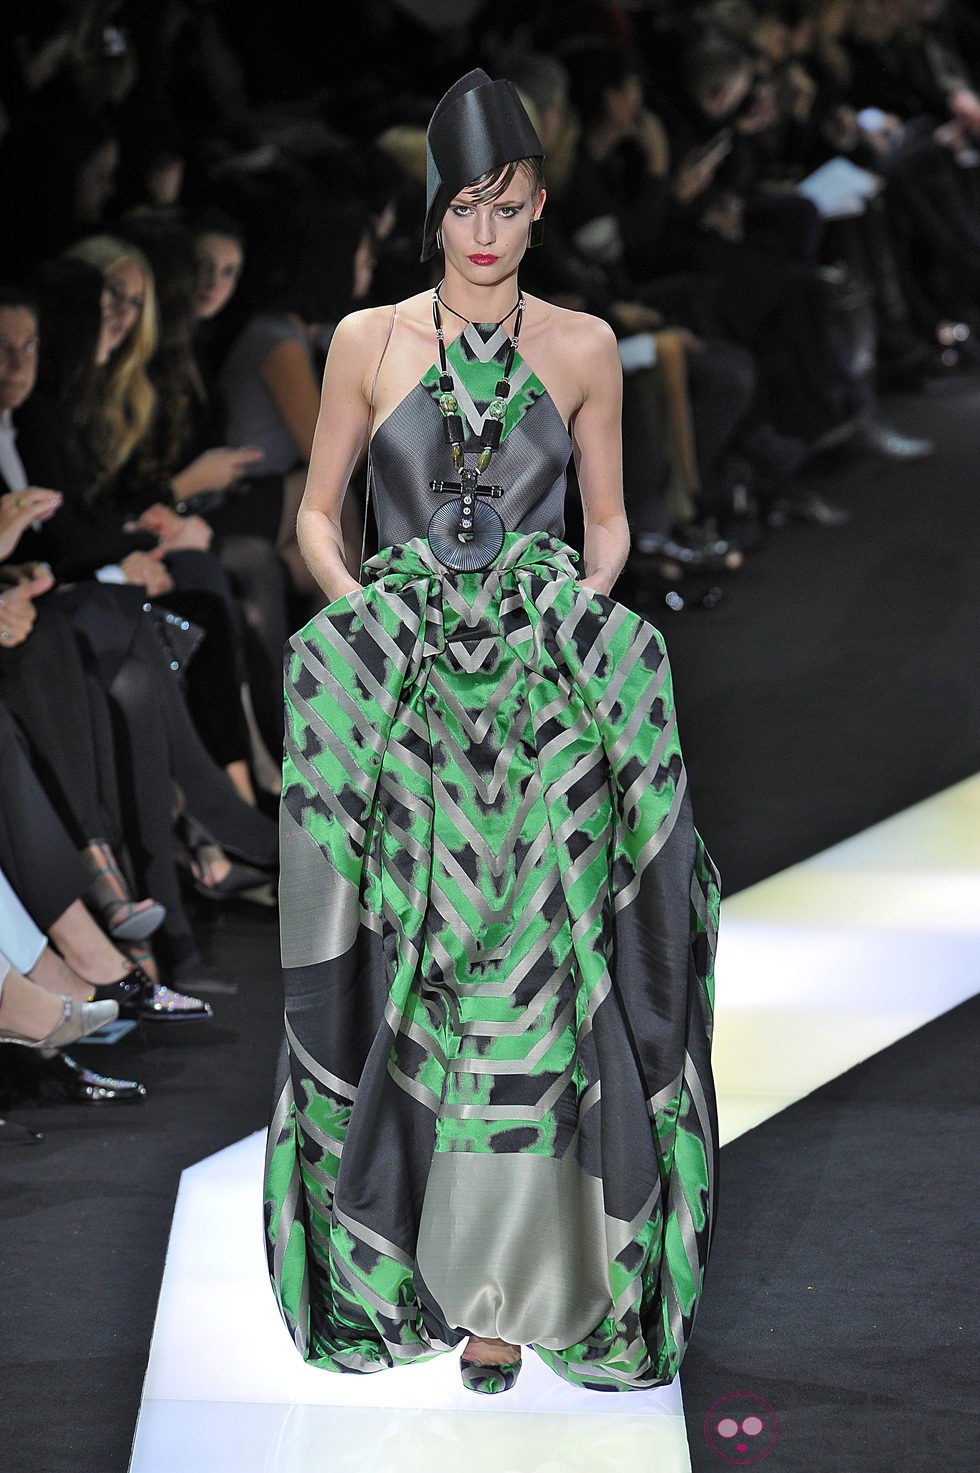 Vestido de estampado geométrico de la colección primavera/verano 2013 de Armani en la Semana de la Alta Costura de París